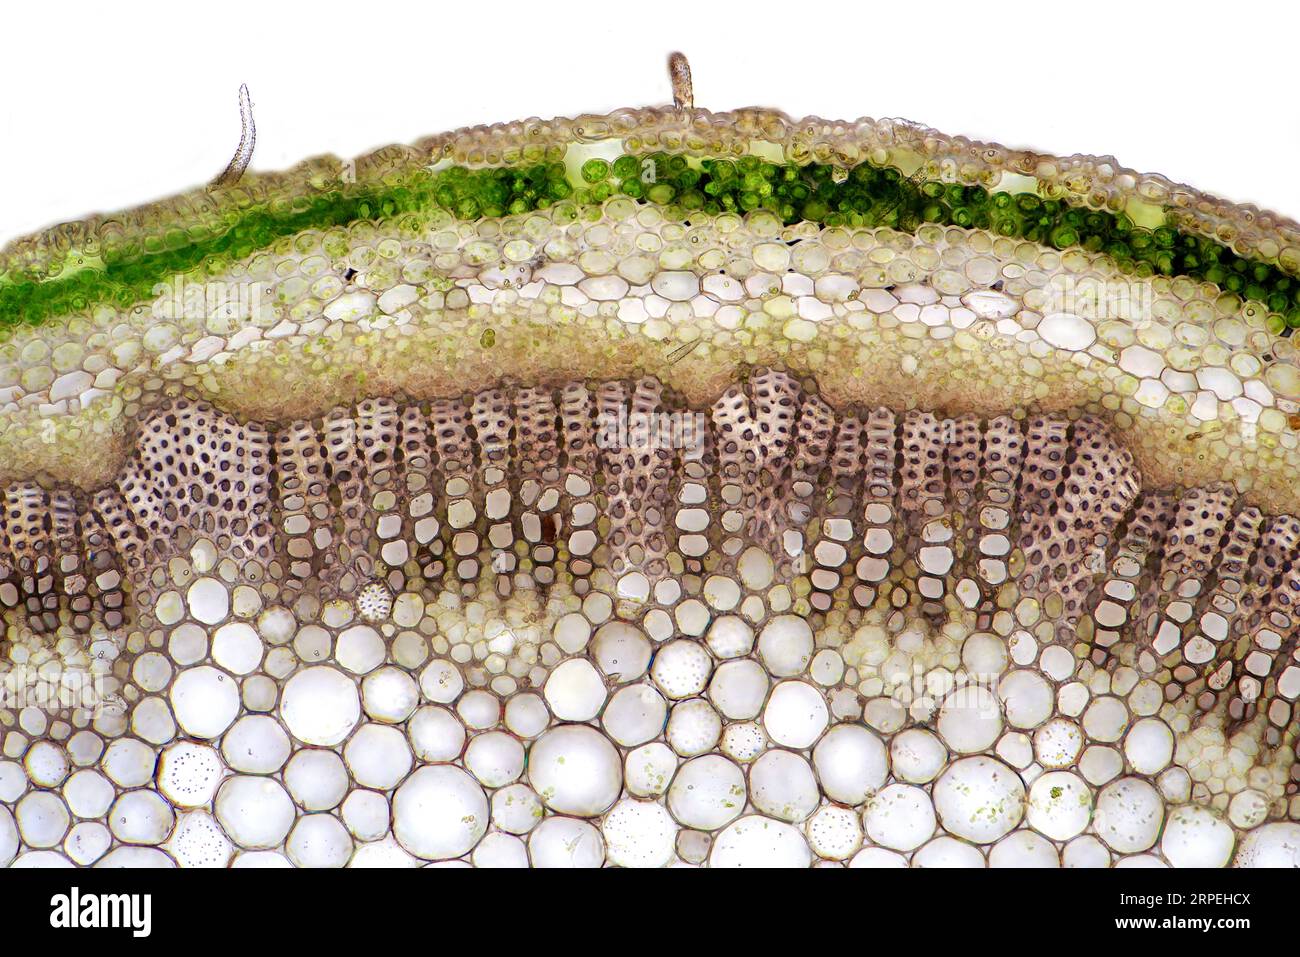 Das Bild zeigt knautia arvensis Gewebe im transversalen Abschnitt des Stiels, fotografiert durch das Mikroskop in hellem Feld, in einer Vergrößerung Stockfoto